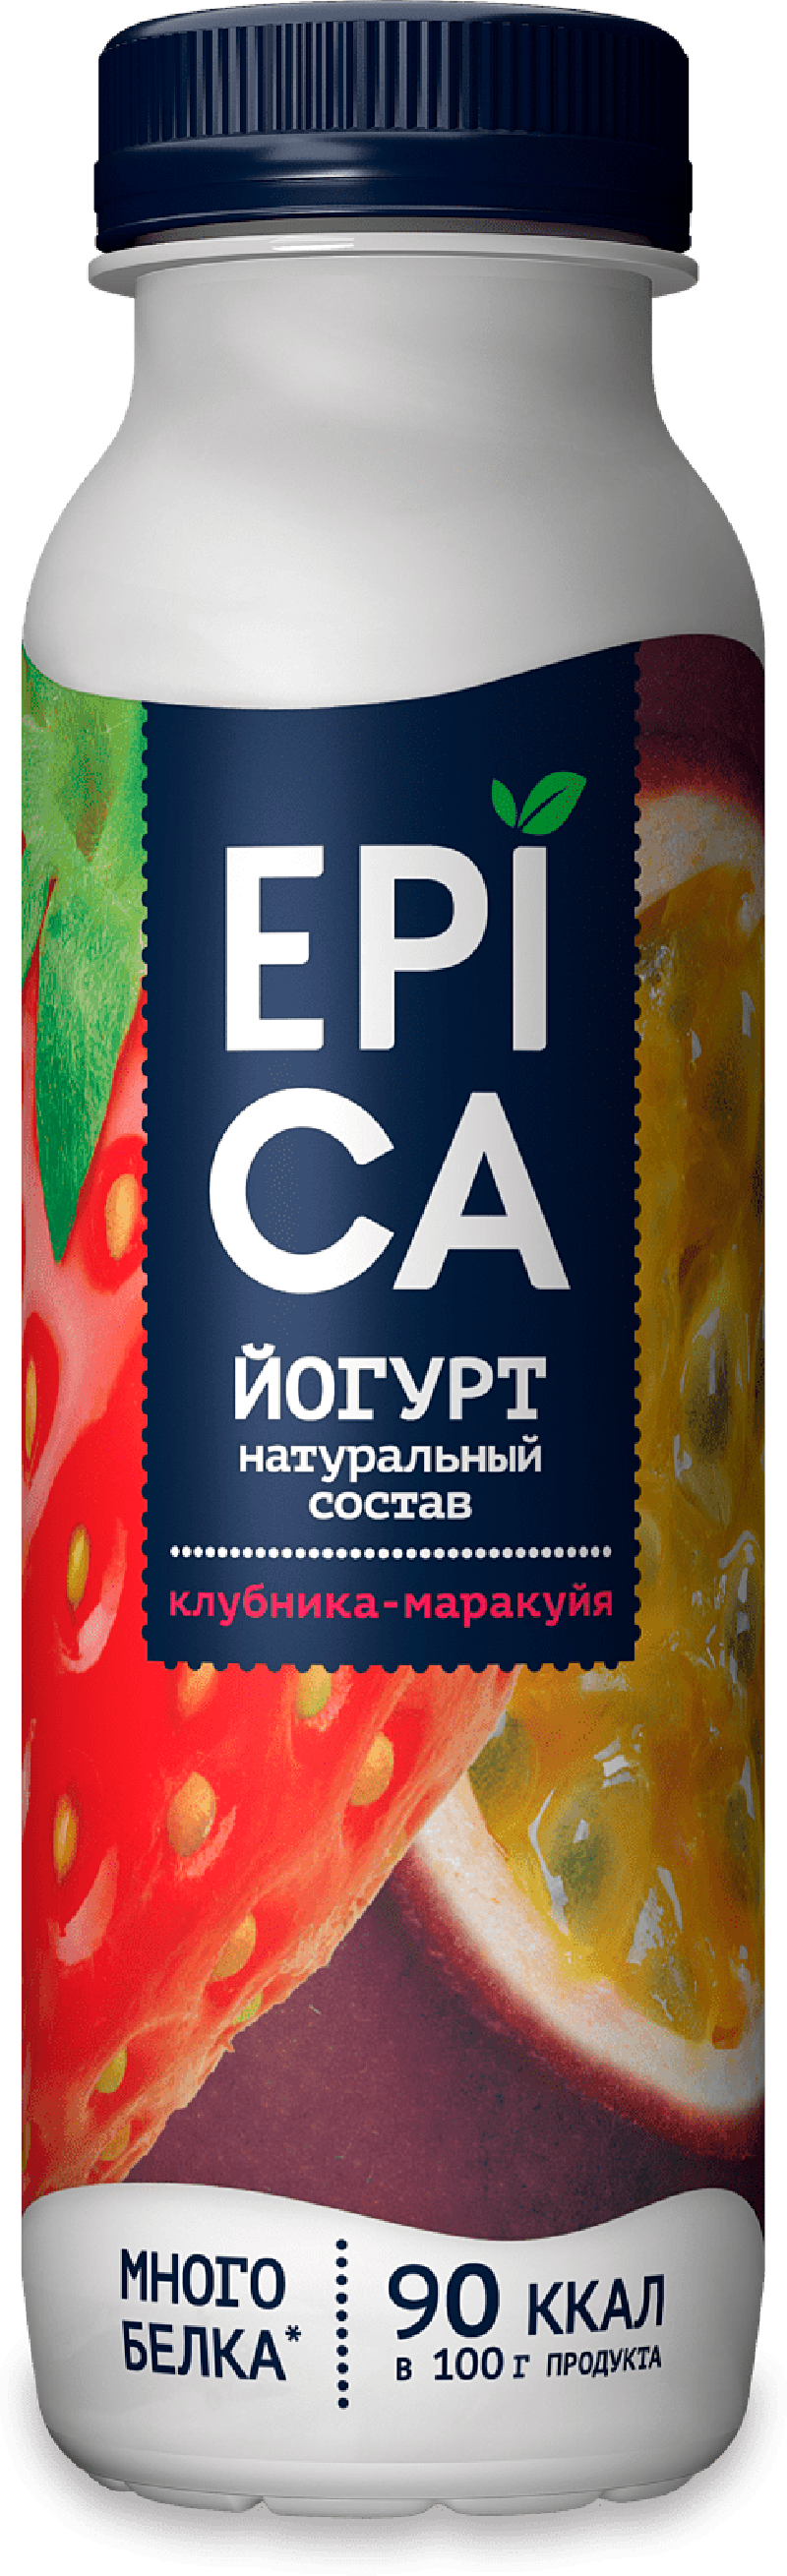 Йогурт ТМ Epica питьевой Клубника - маракуйя 2,5% 130г